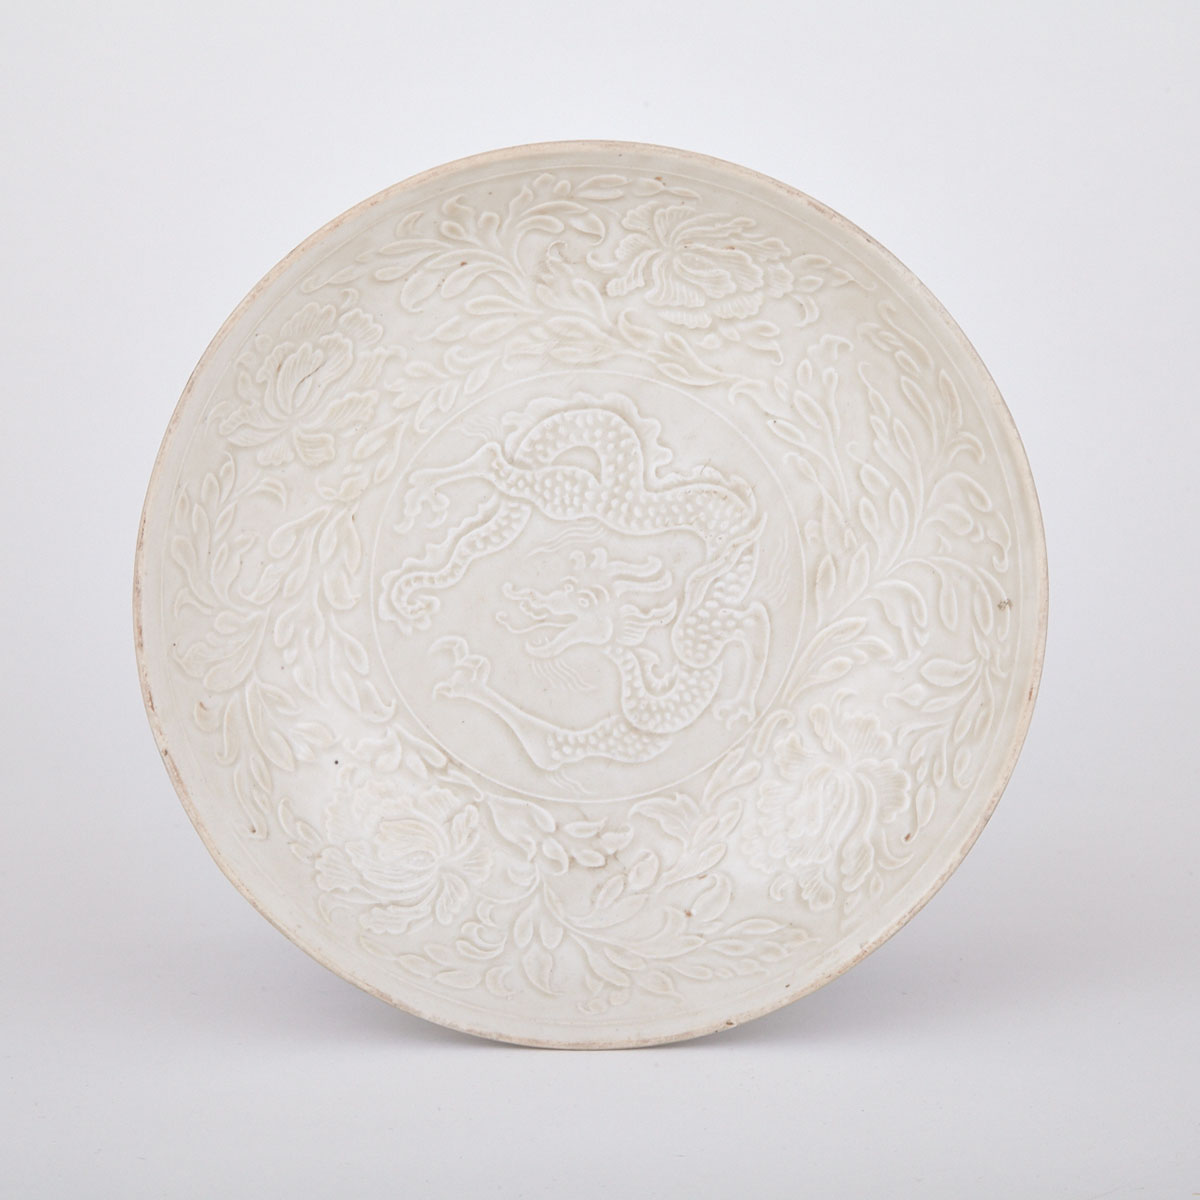 Ding Type White Glazed Dragon Bowl